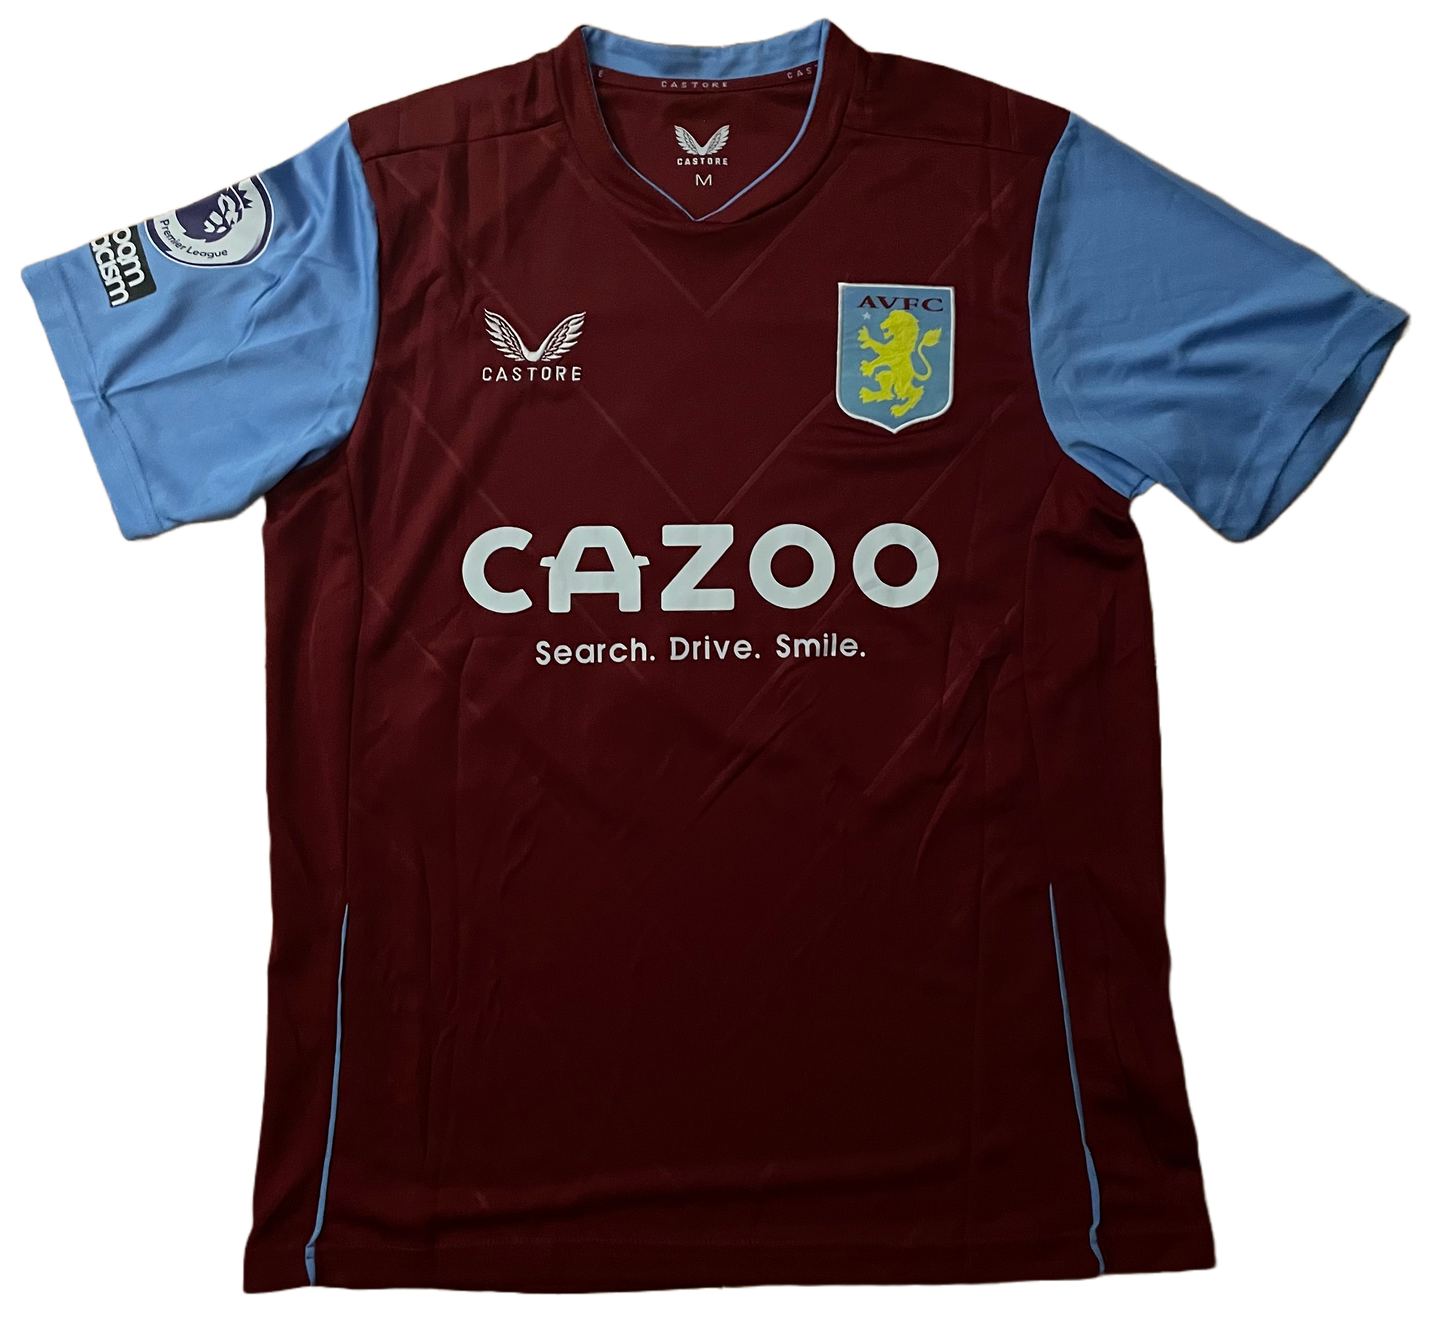 Signed Matty Cash Aston Villa Home Shirt 22/23